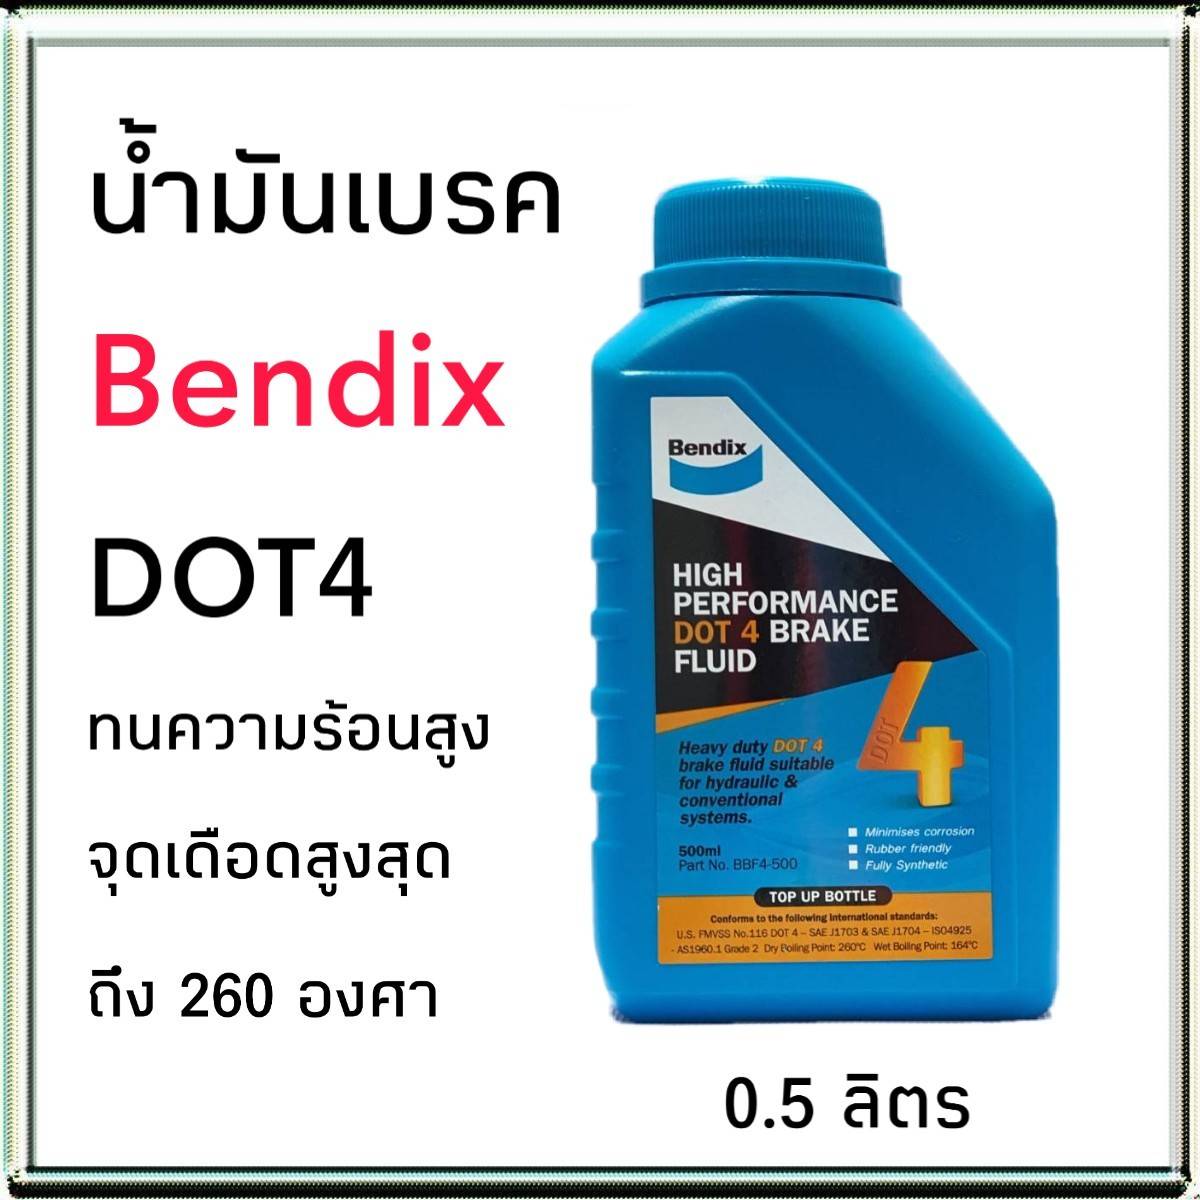 น้ำมันเบรค เบนดิก ดอท 4 0.5ลิตร น้ำมันเบรค Bendix Dot4 0.5lite